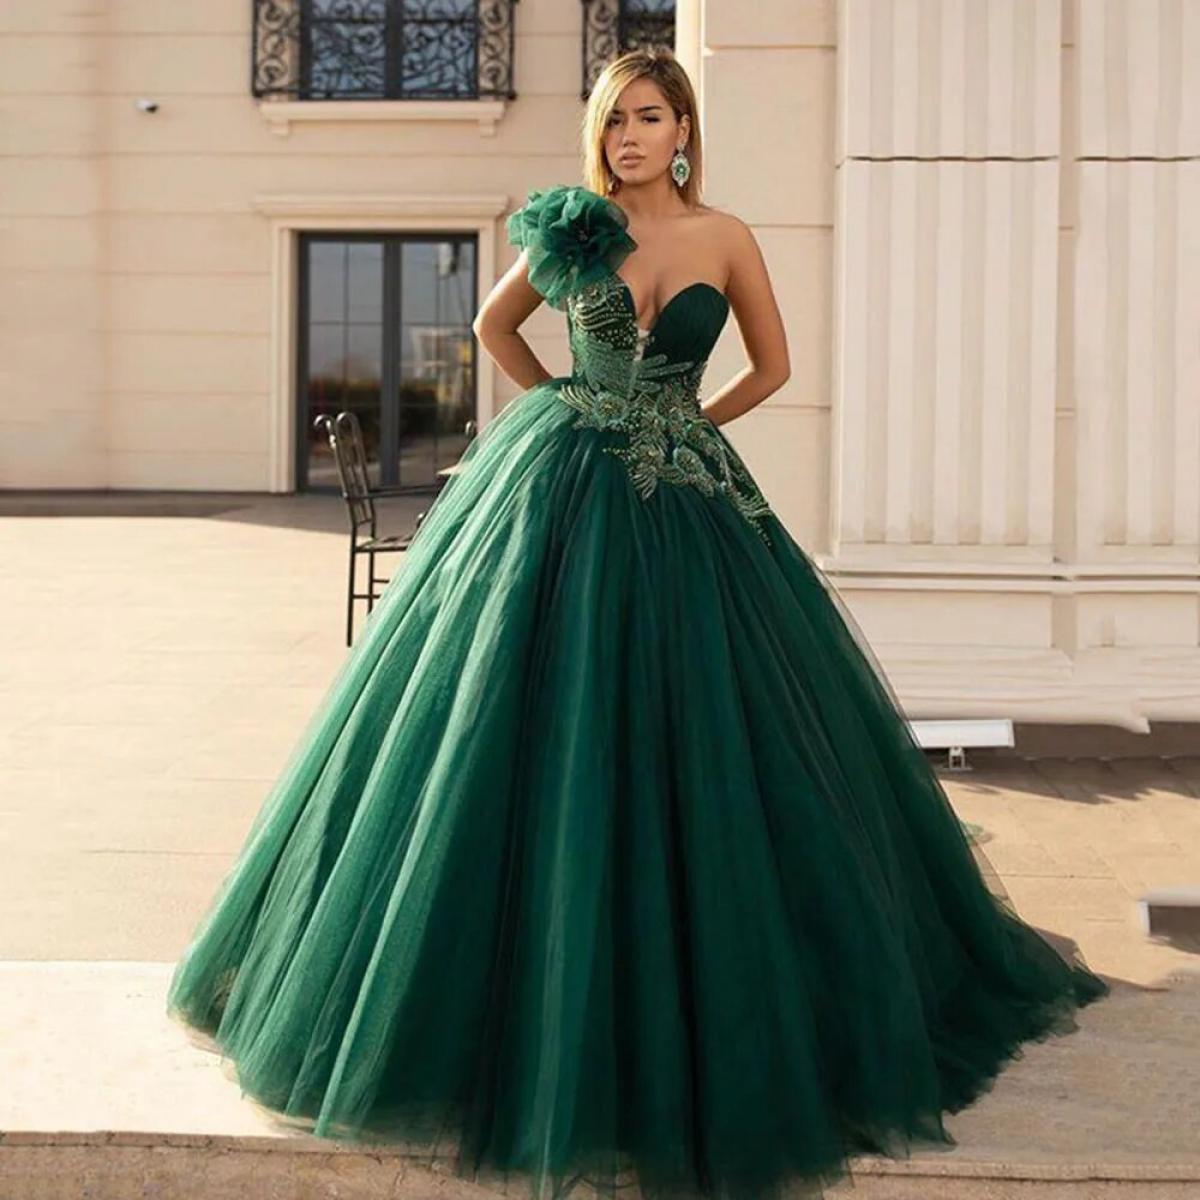 Green One Shoulder Formal Evening Dresses V Neck Appliques Flower Crystal Beads Prom Party Dress Belt Sweep Train 20223 